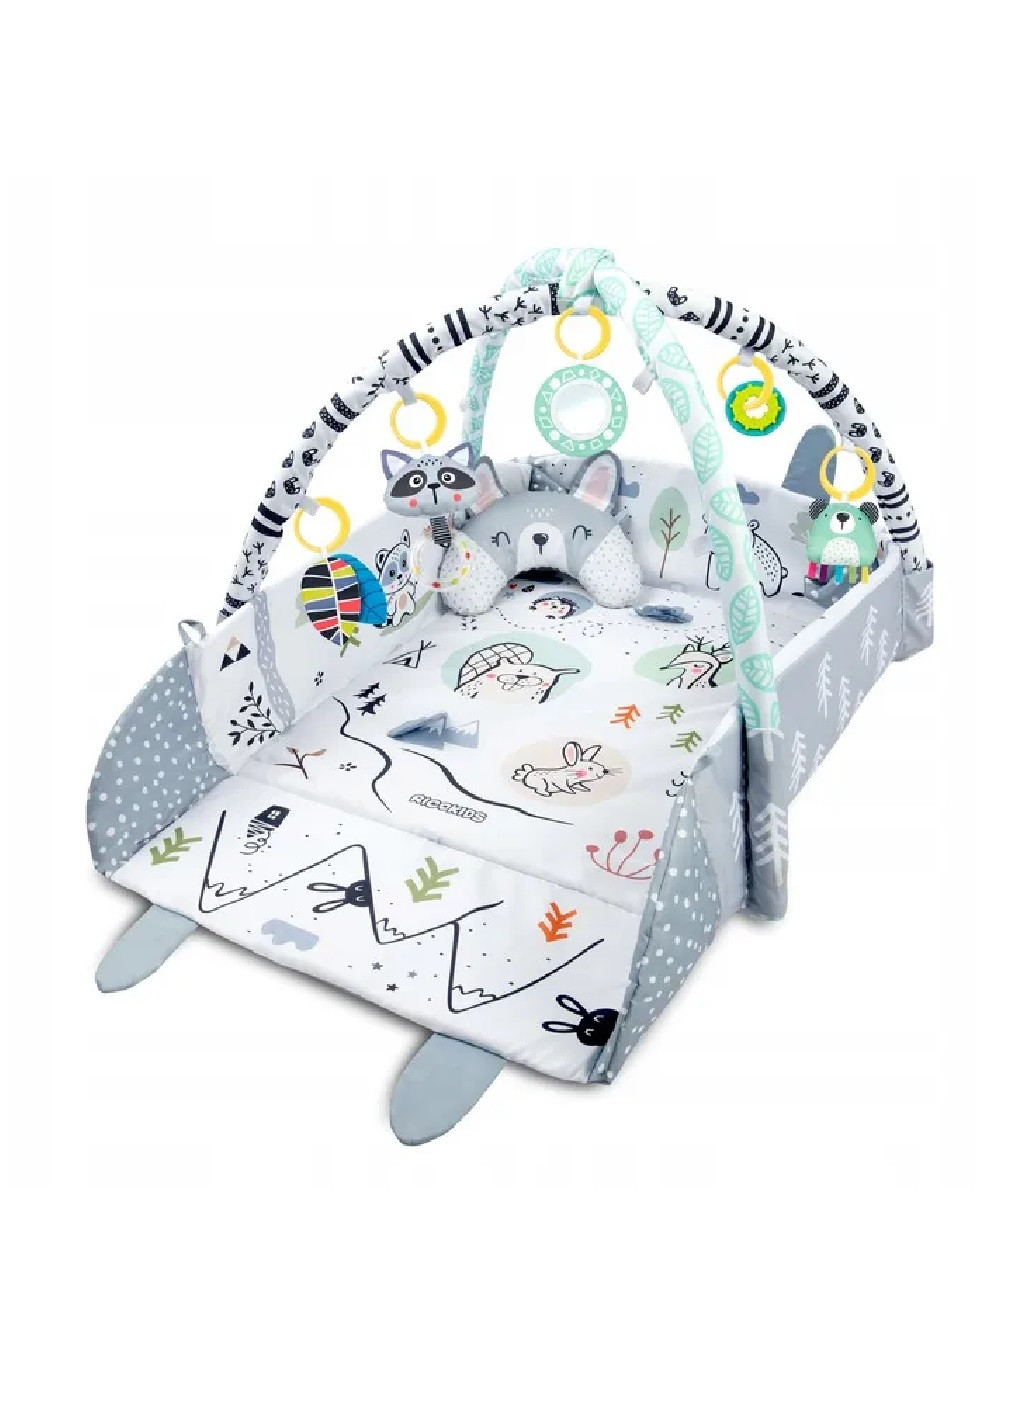 Большой развивающий интерактивный коврик для младенцев малышей детей с 7 игрушками 100х110х53 см (474820-Prob) Серый кролик Unbranded (259906169)